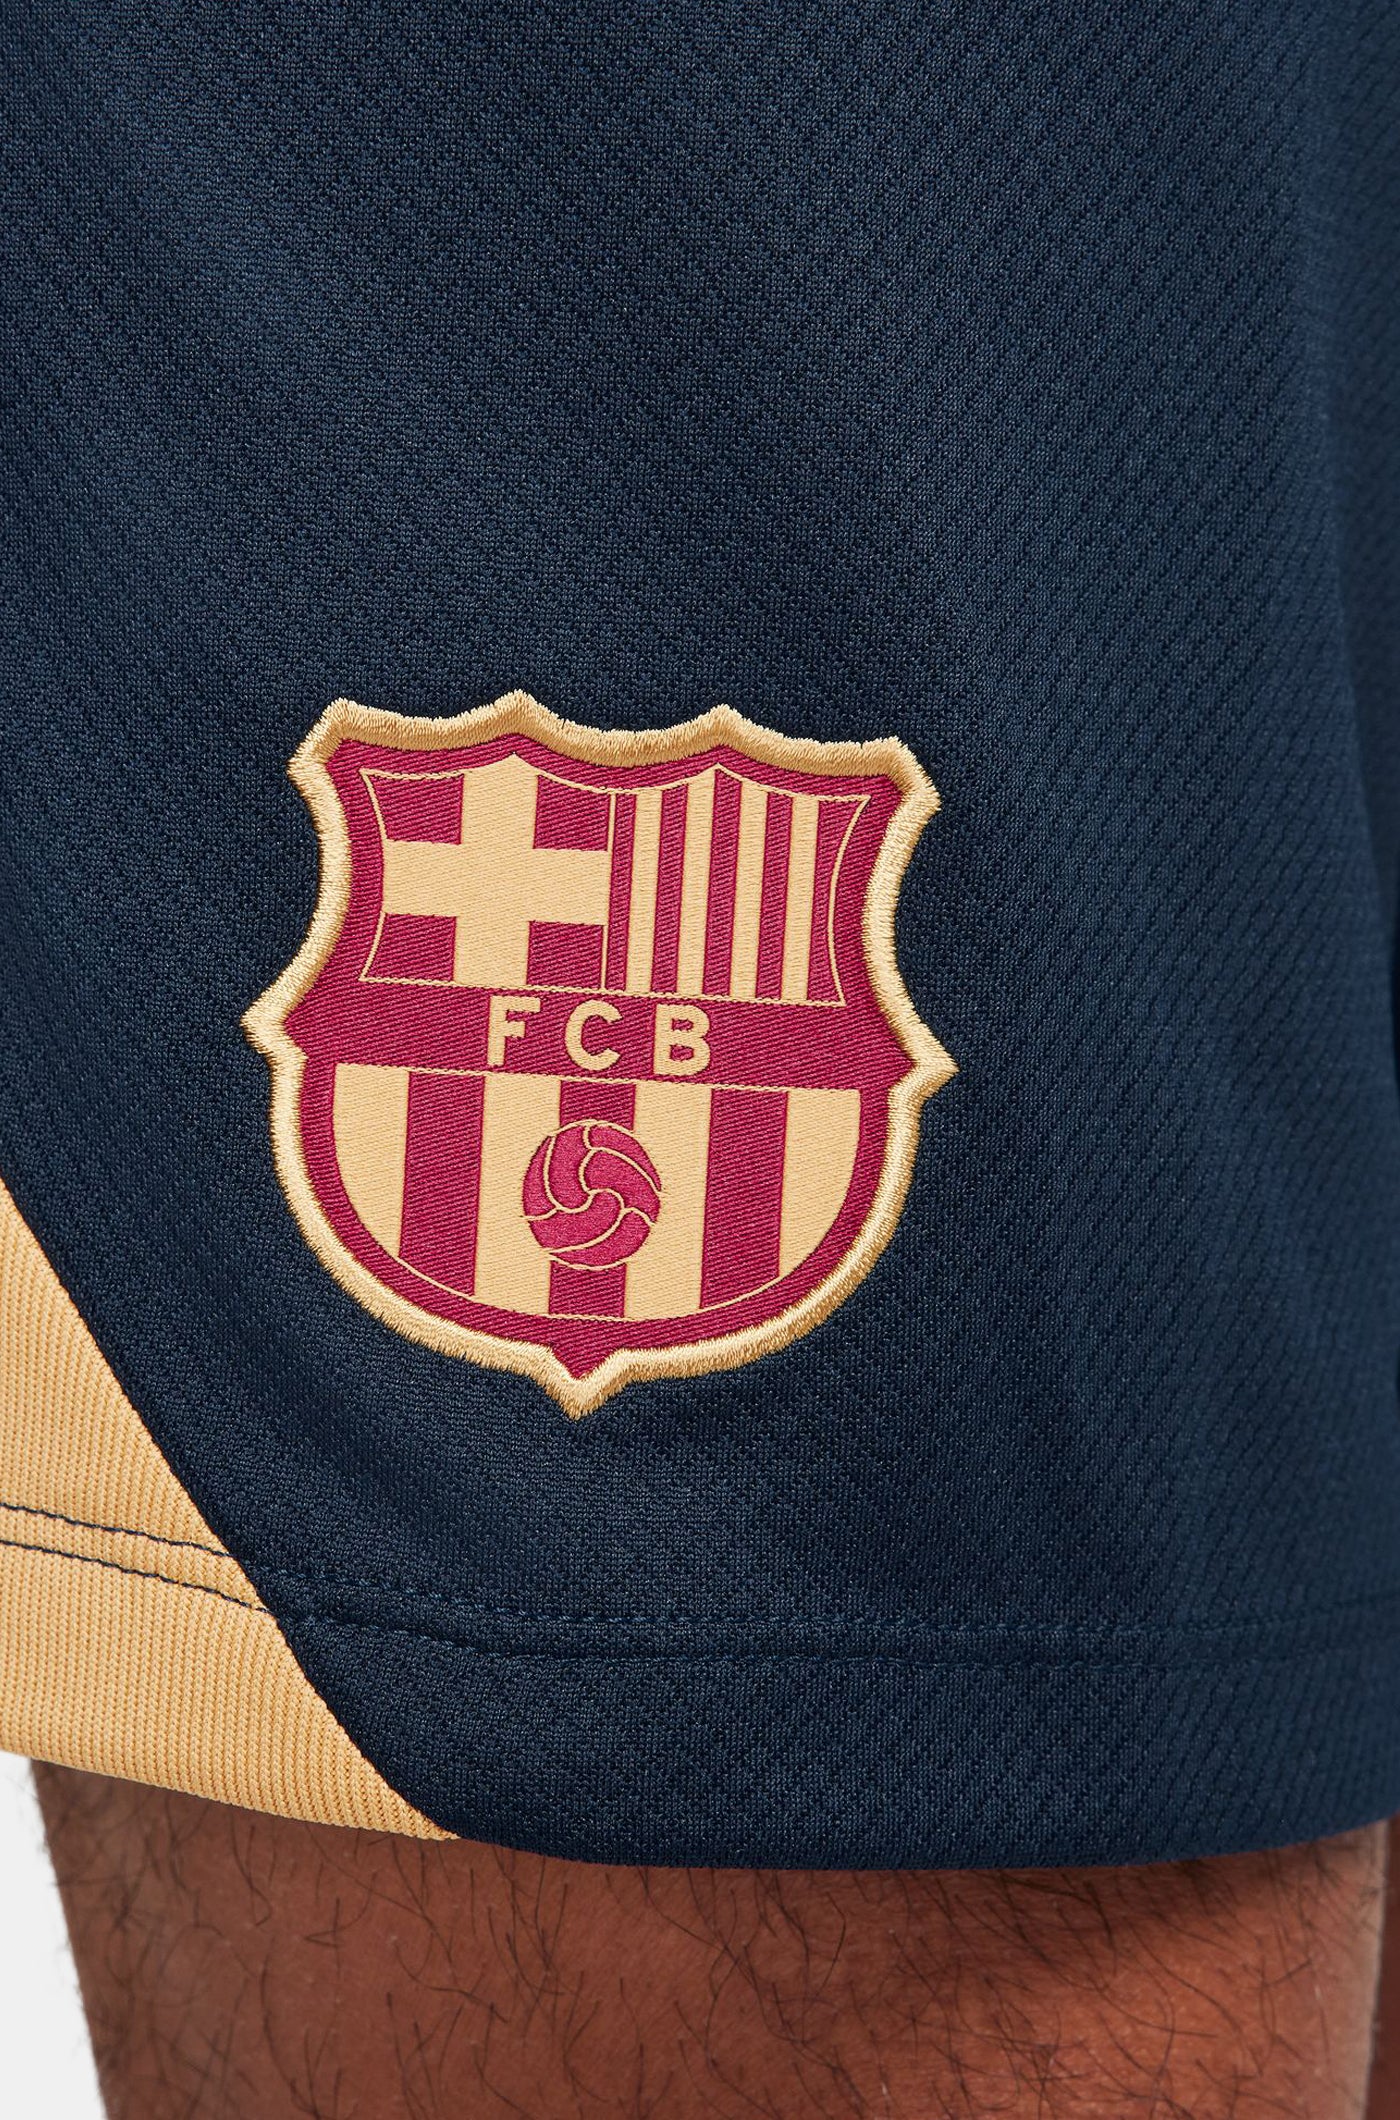 Pantalons curts d'entrenament obsidiana del FC Barcelona 23/24